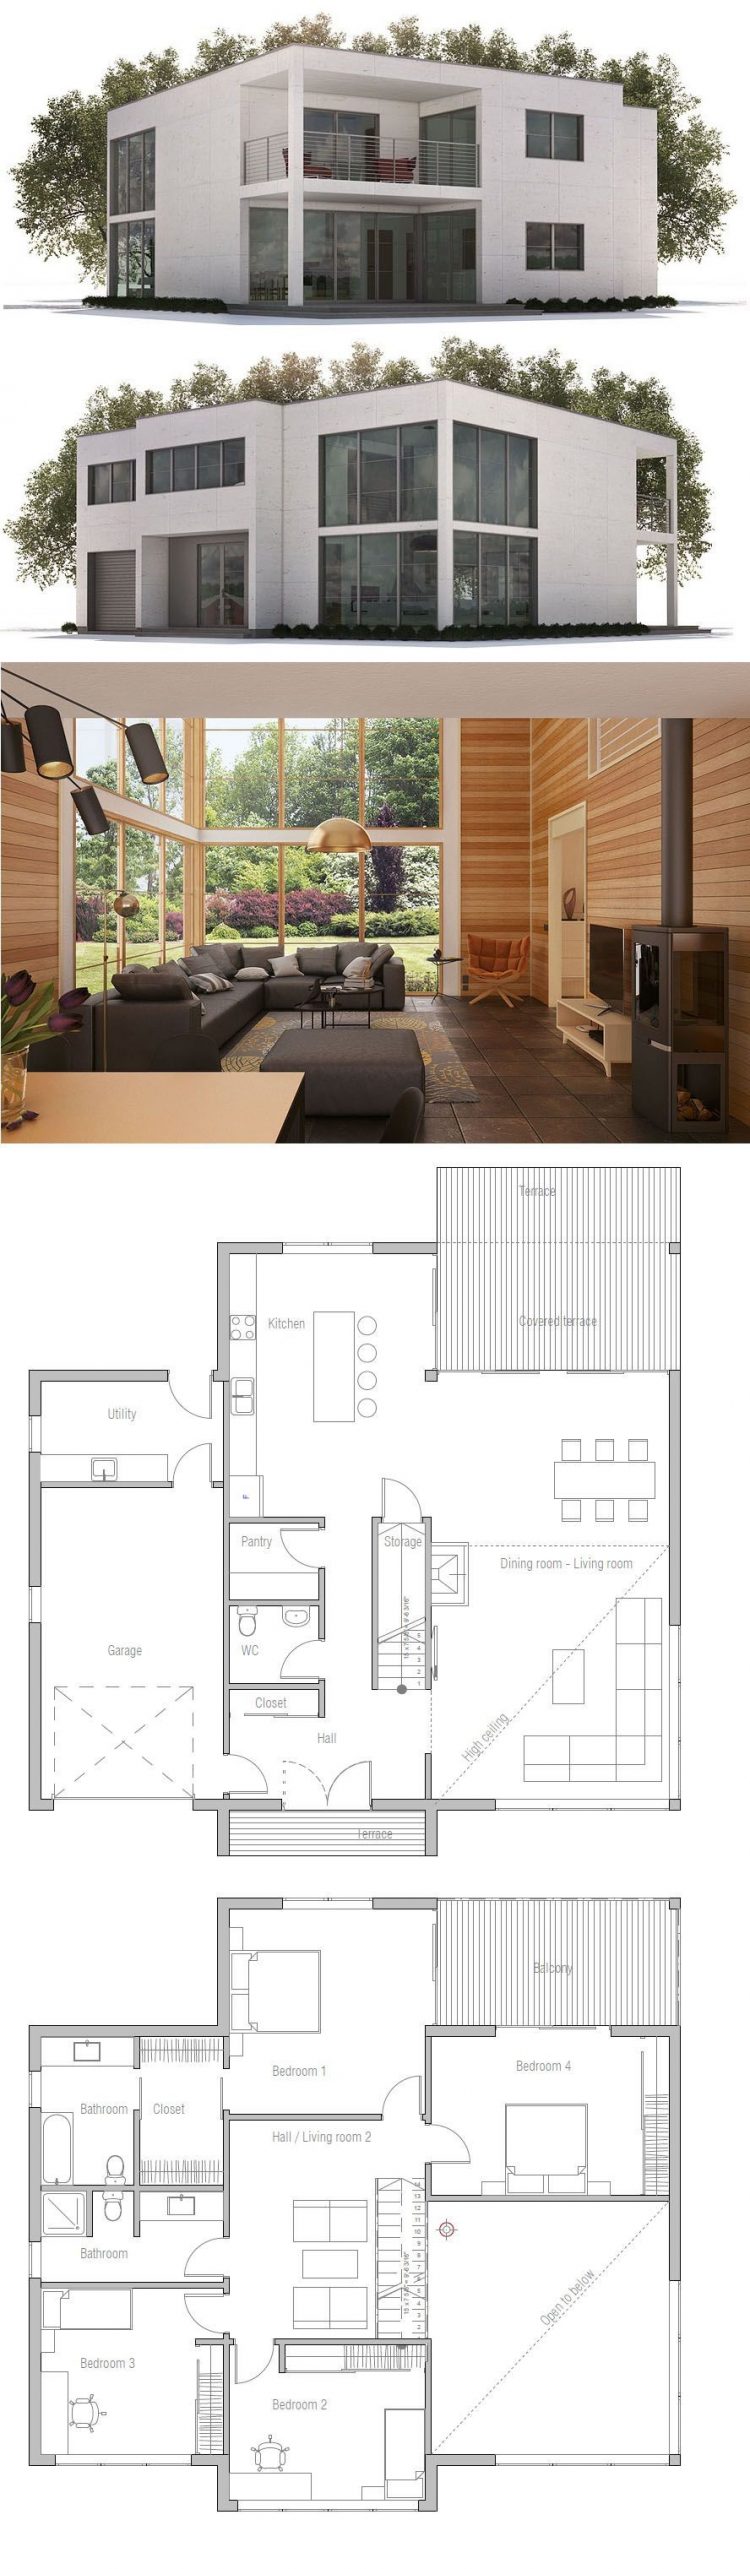 desain rumah minimalis sederhana 2 lantai